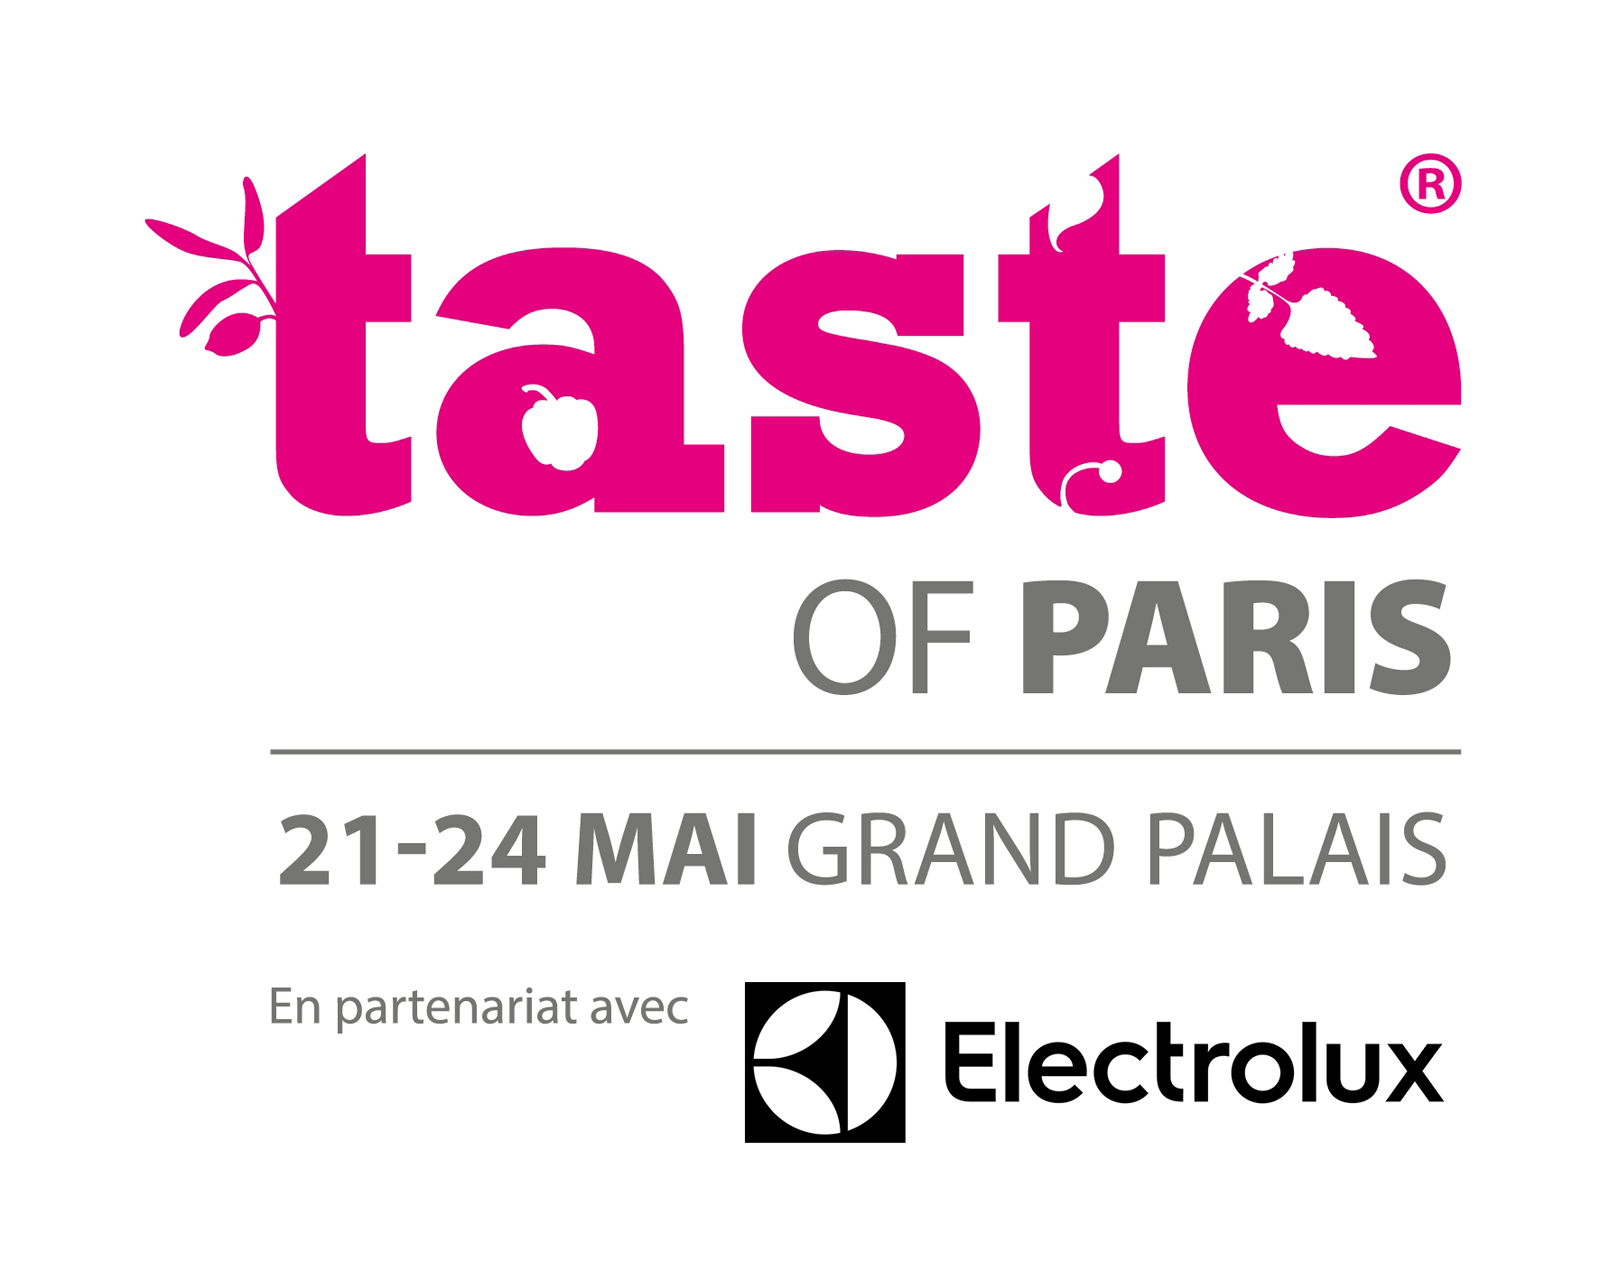 taste of paris festival culinaire grand palais paris cuisine gastronomie atelier animation découverte affiche blog United states of paris